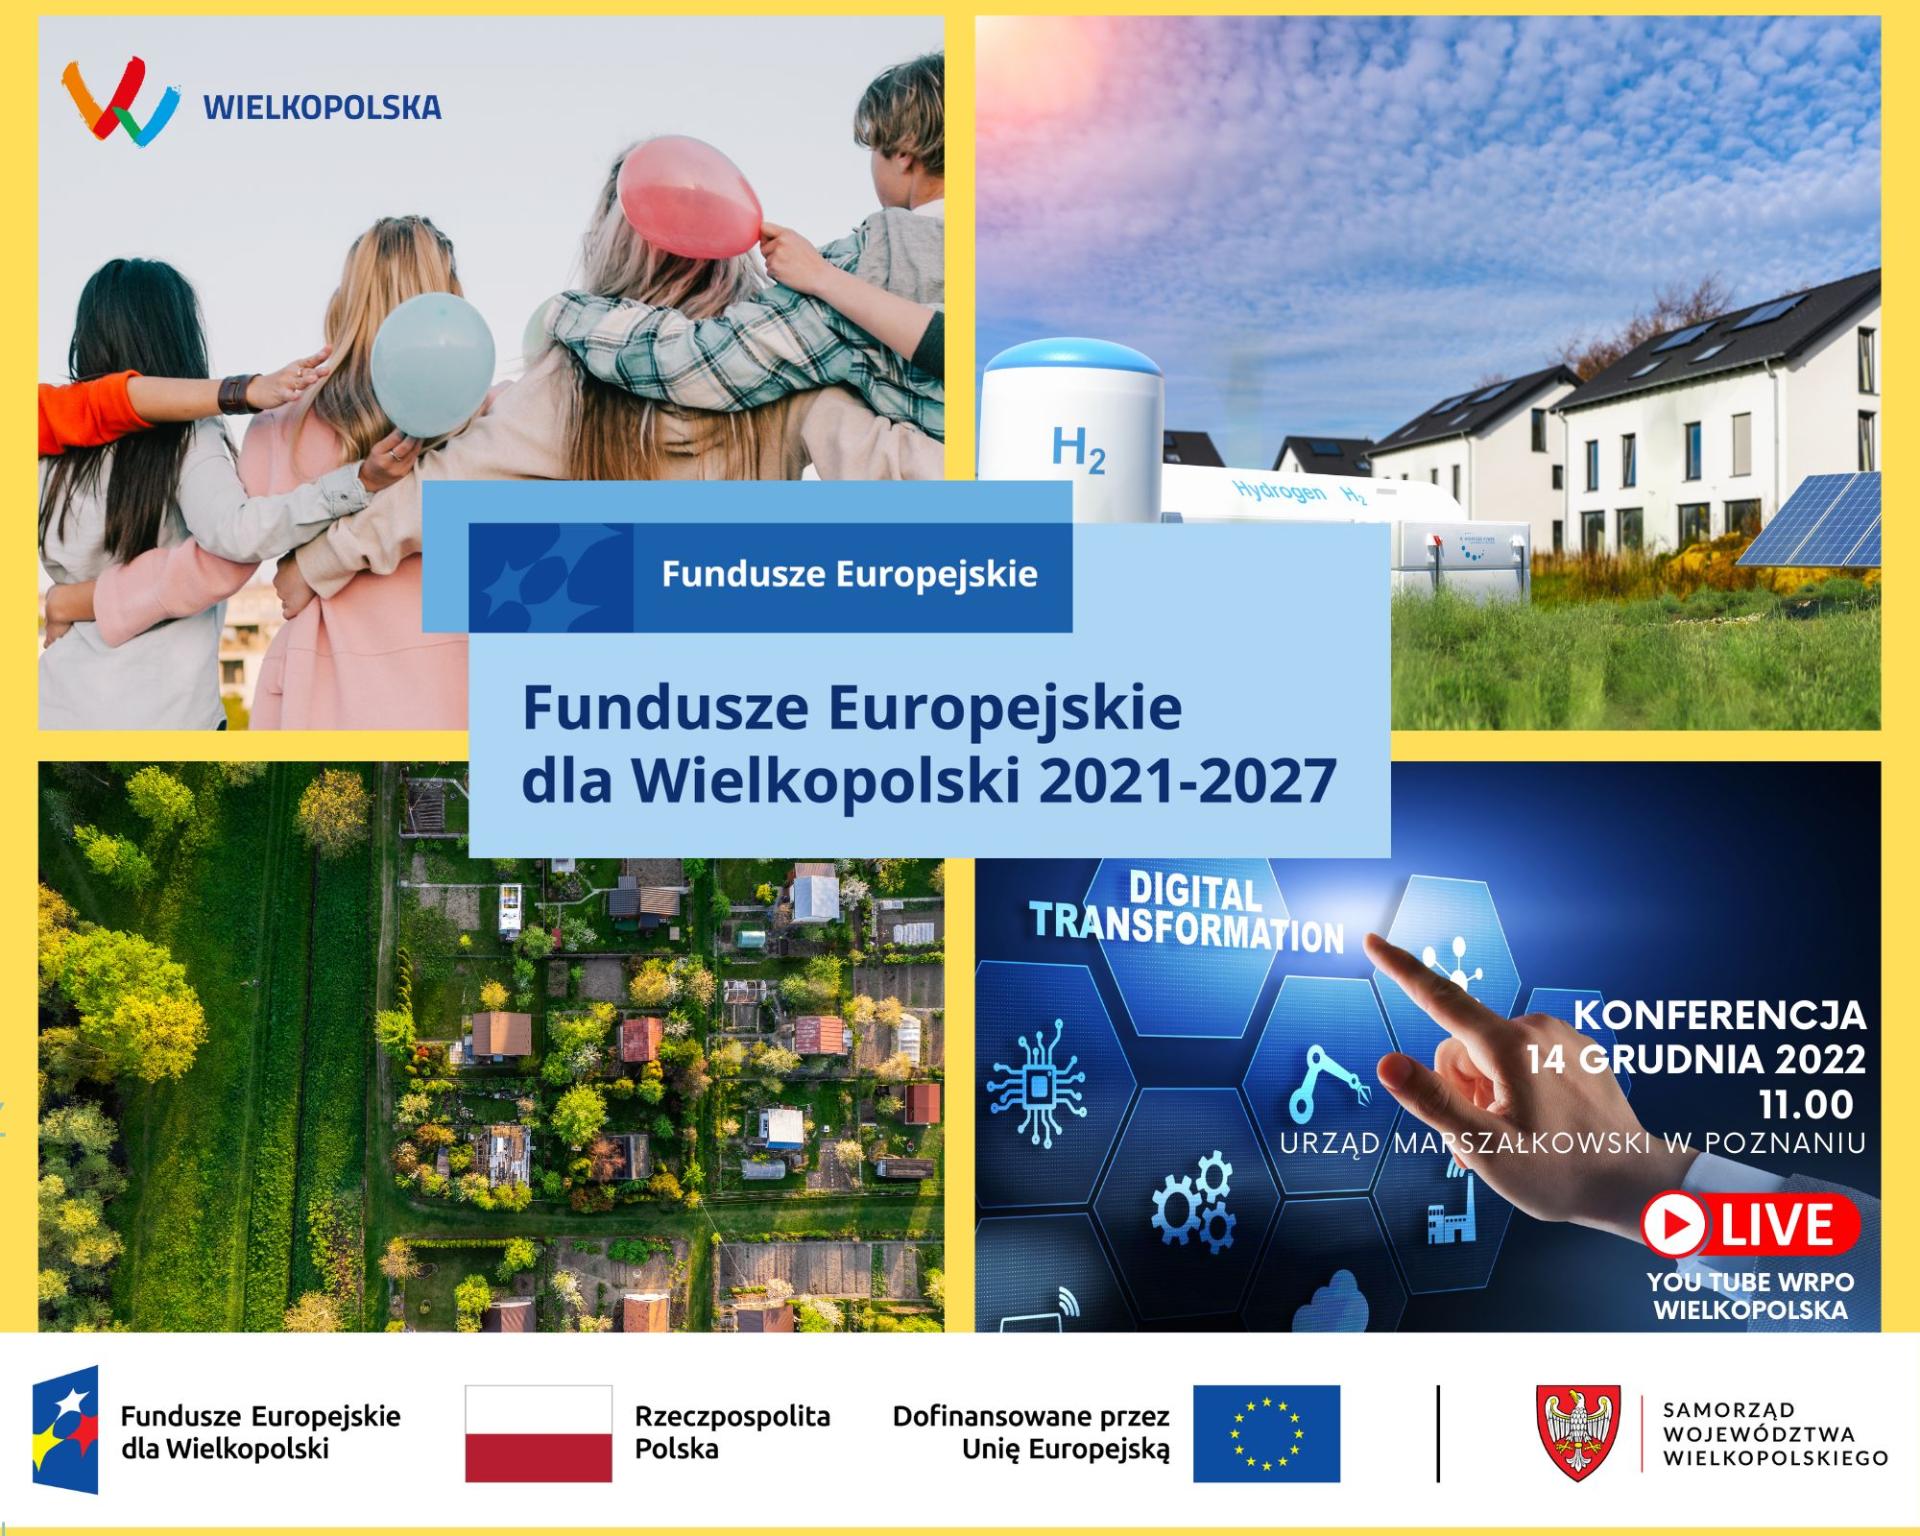 Konferencja Fundusze Europejskie dla Wielkopolski. Zapisz się! - zobacz więcej